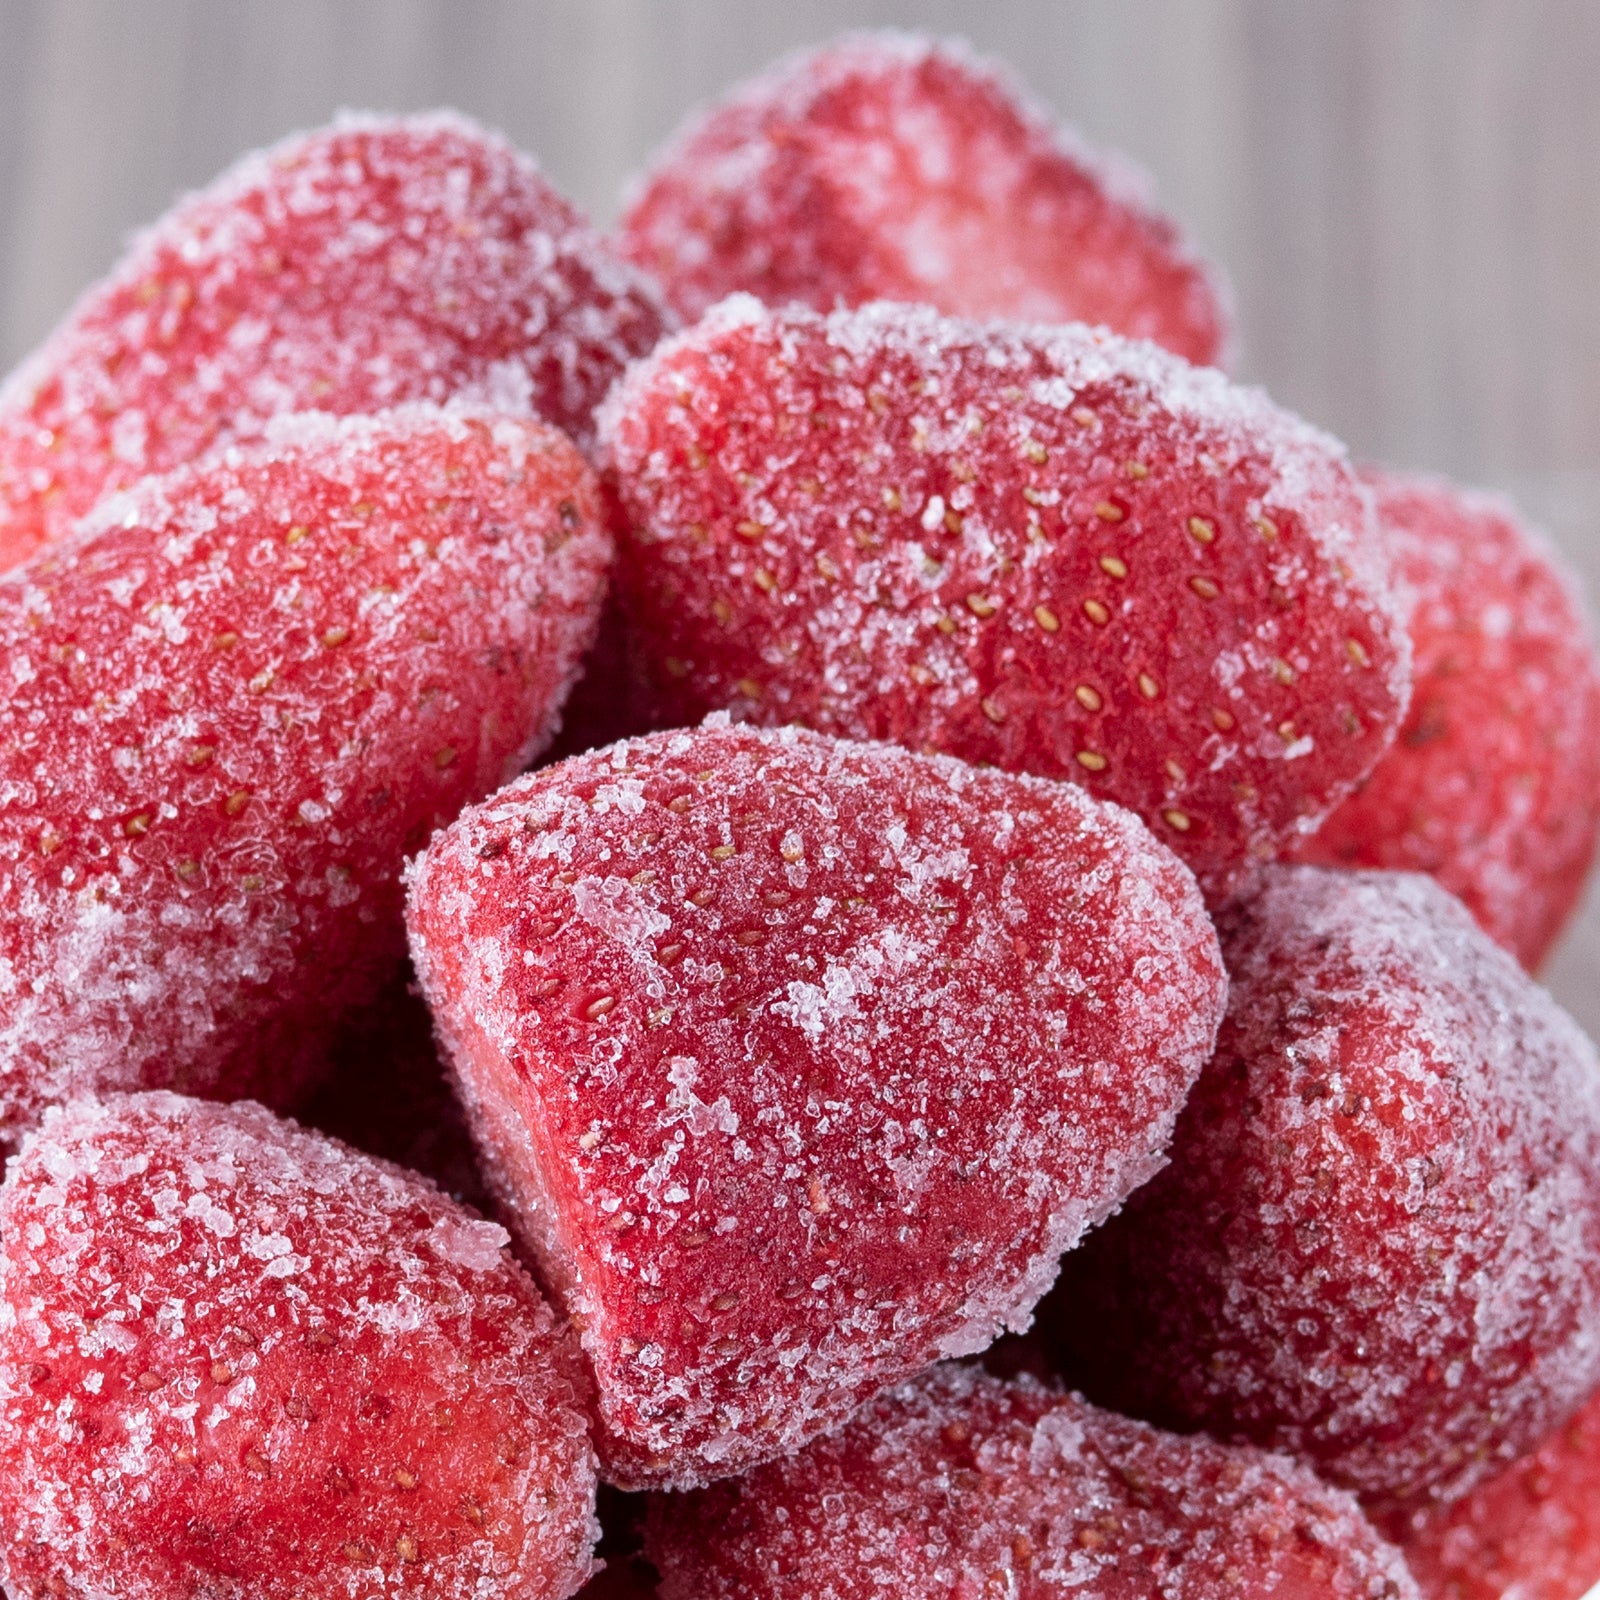 有機 JAS オーガニック 冷凍 ストロベリー いちご 苺 トルコ産 化学物質不使用 (1kg) ホライズンファームズ